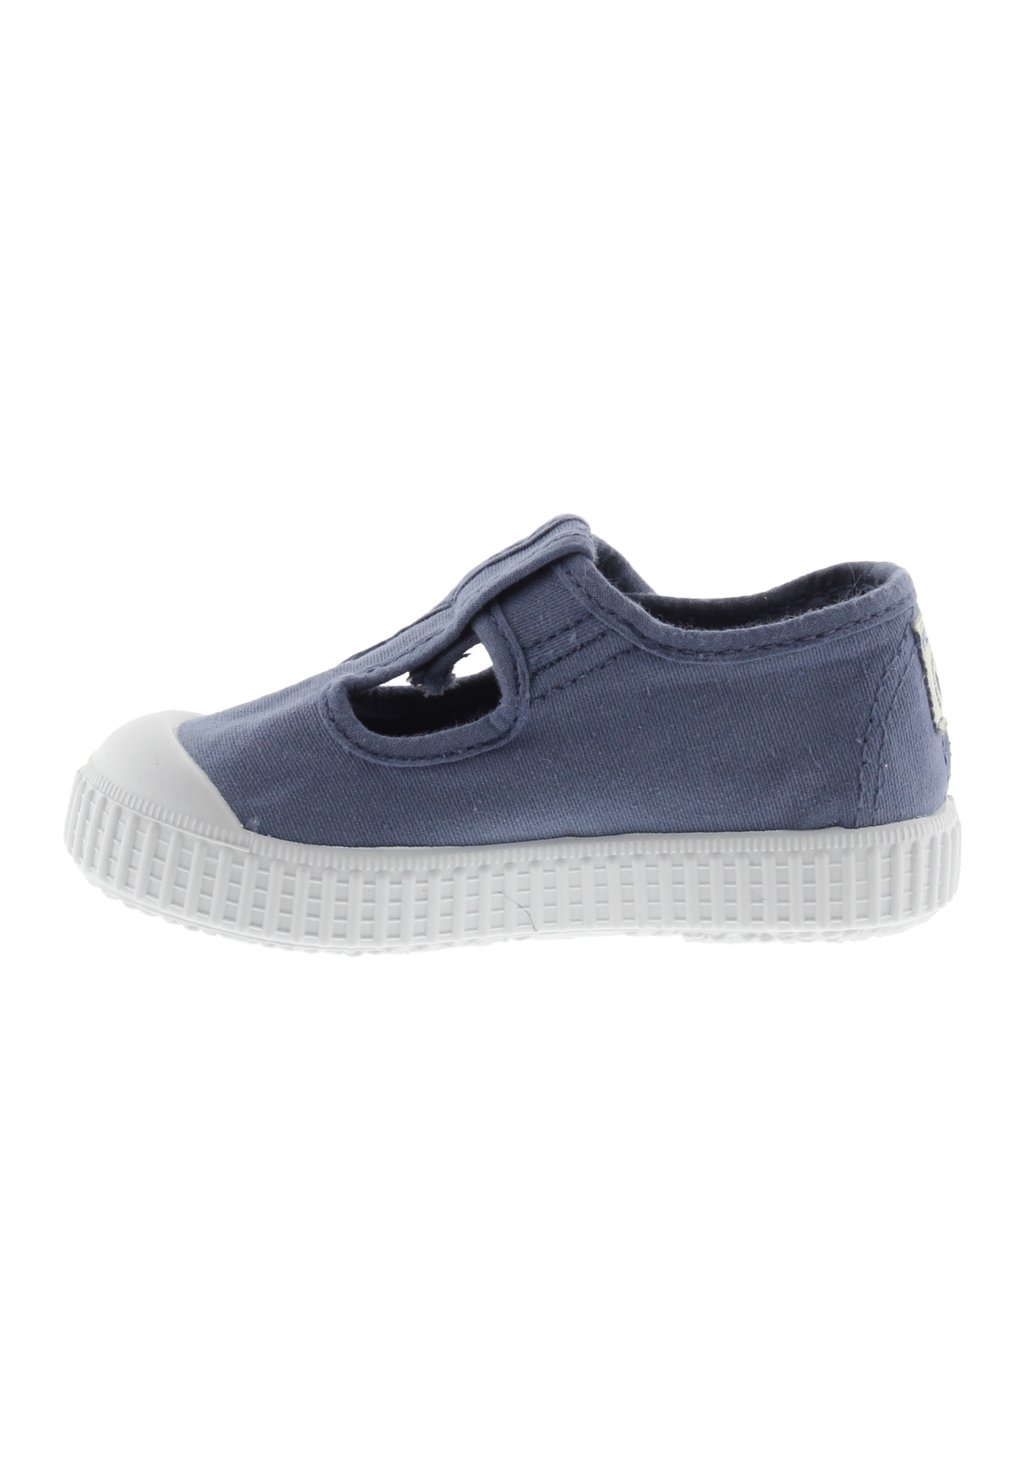 Кроссовки низкие LONA MARINO Victoria Shoes, цвет azul низкие кроссовки zapatillas mtng цвет azul marino